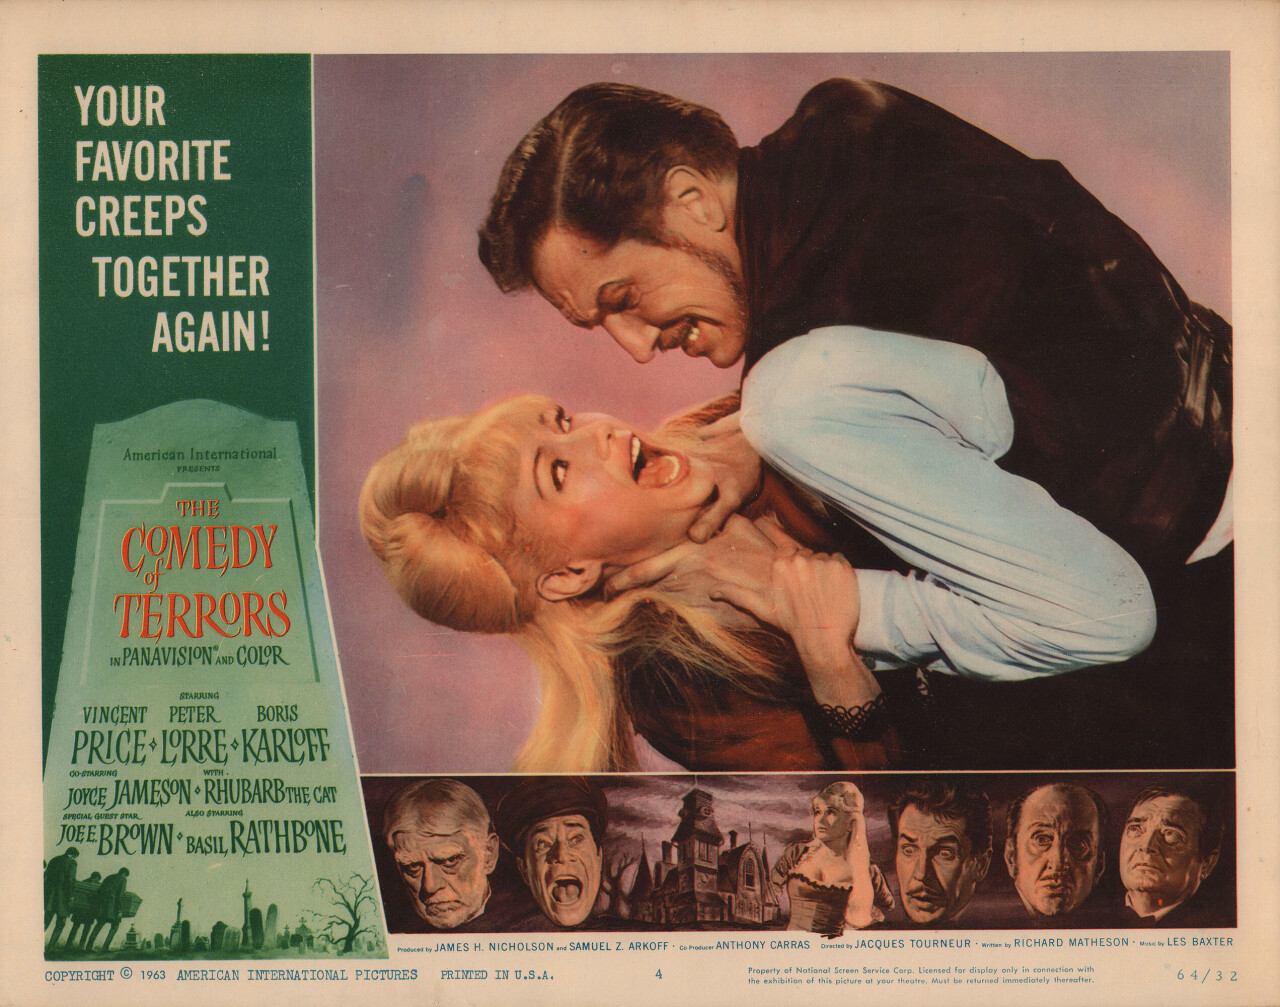 Комедия ужасов (The Comedy of Terrors, 1963), режиссёр Жак Турнер, американский постер к фильму, автор Рейнольд Браун (ужасы, 1964 год)